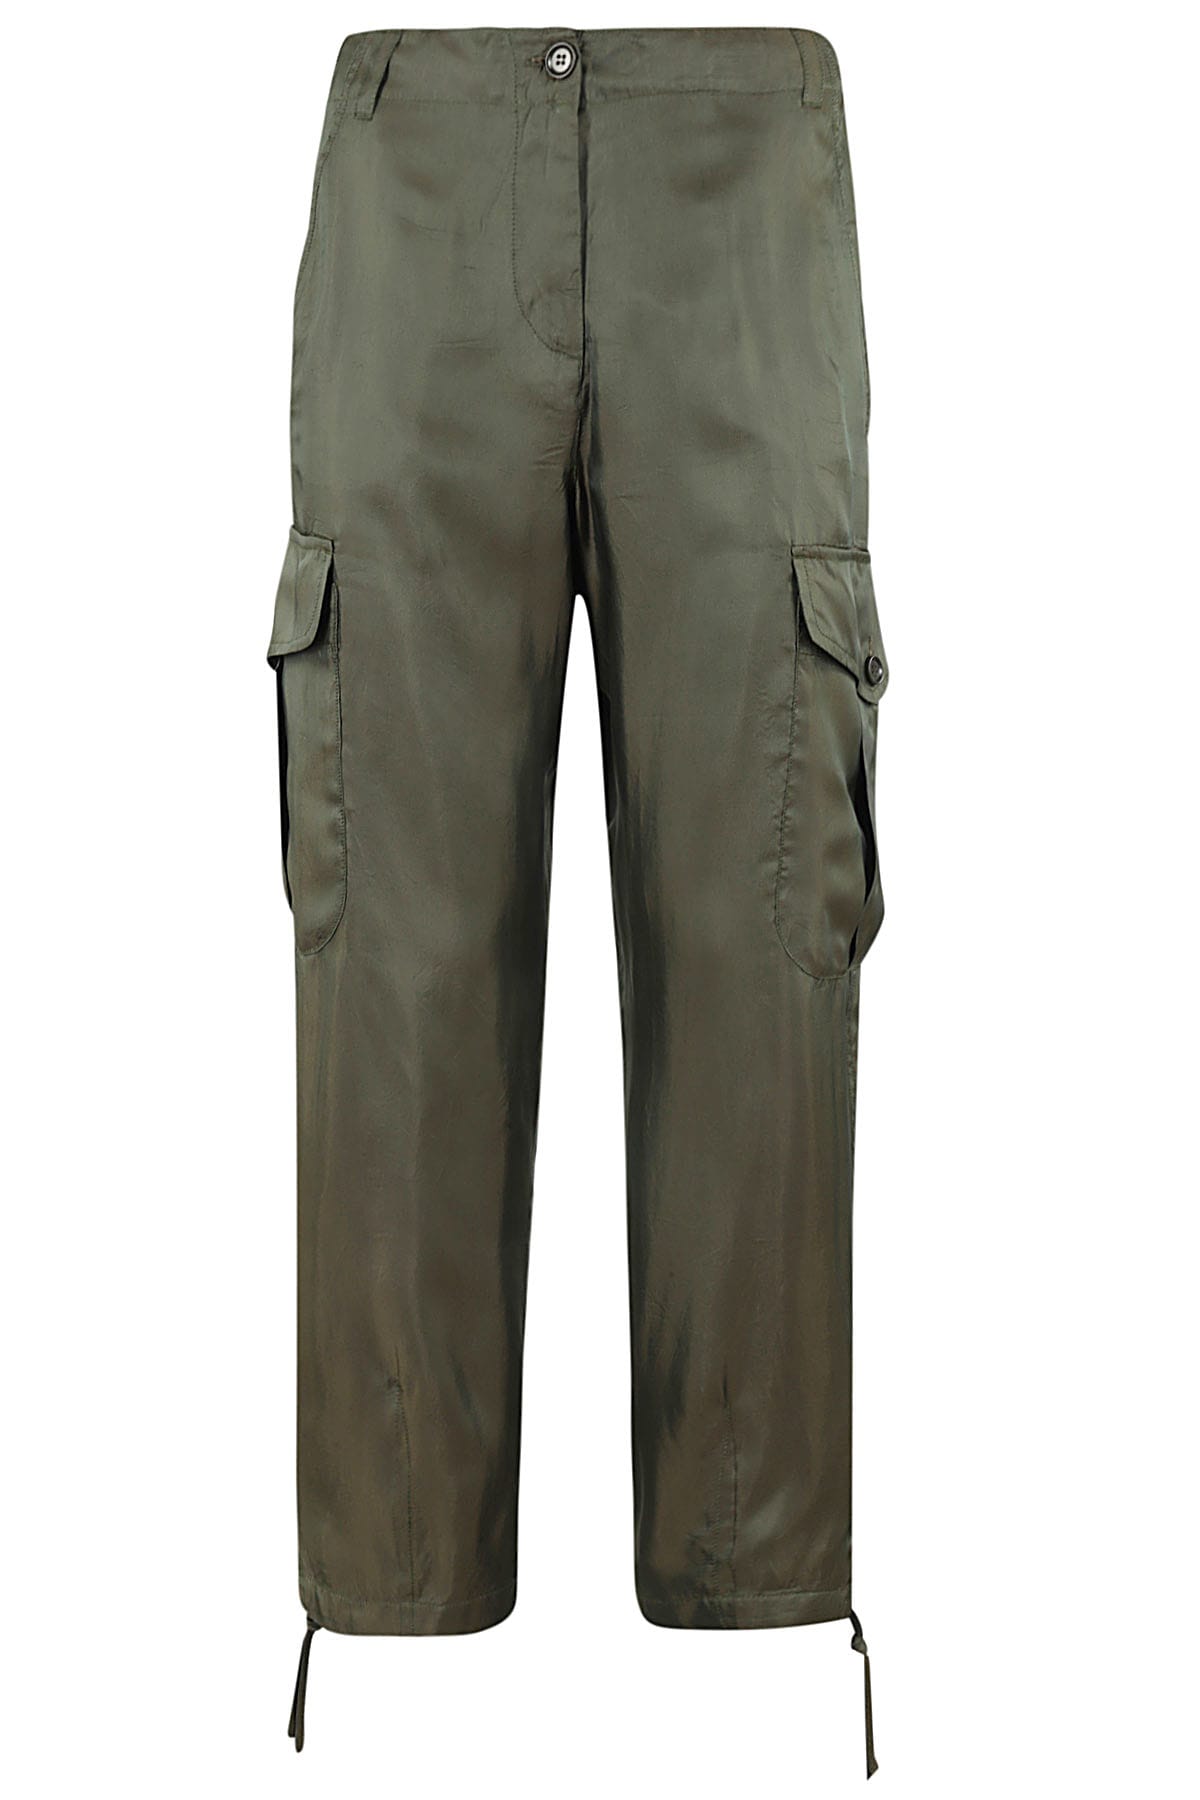 Pantalone Mod 0169